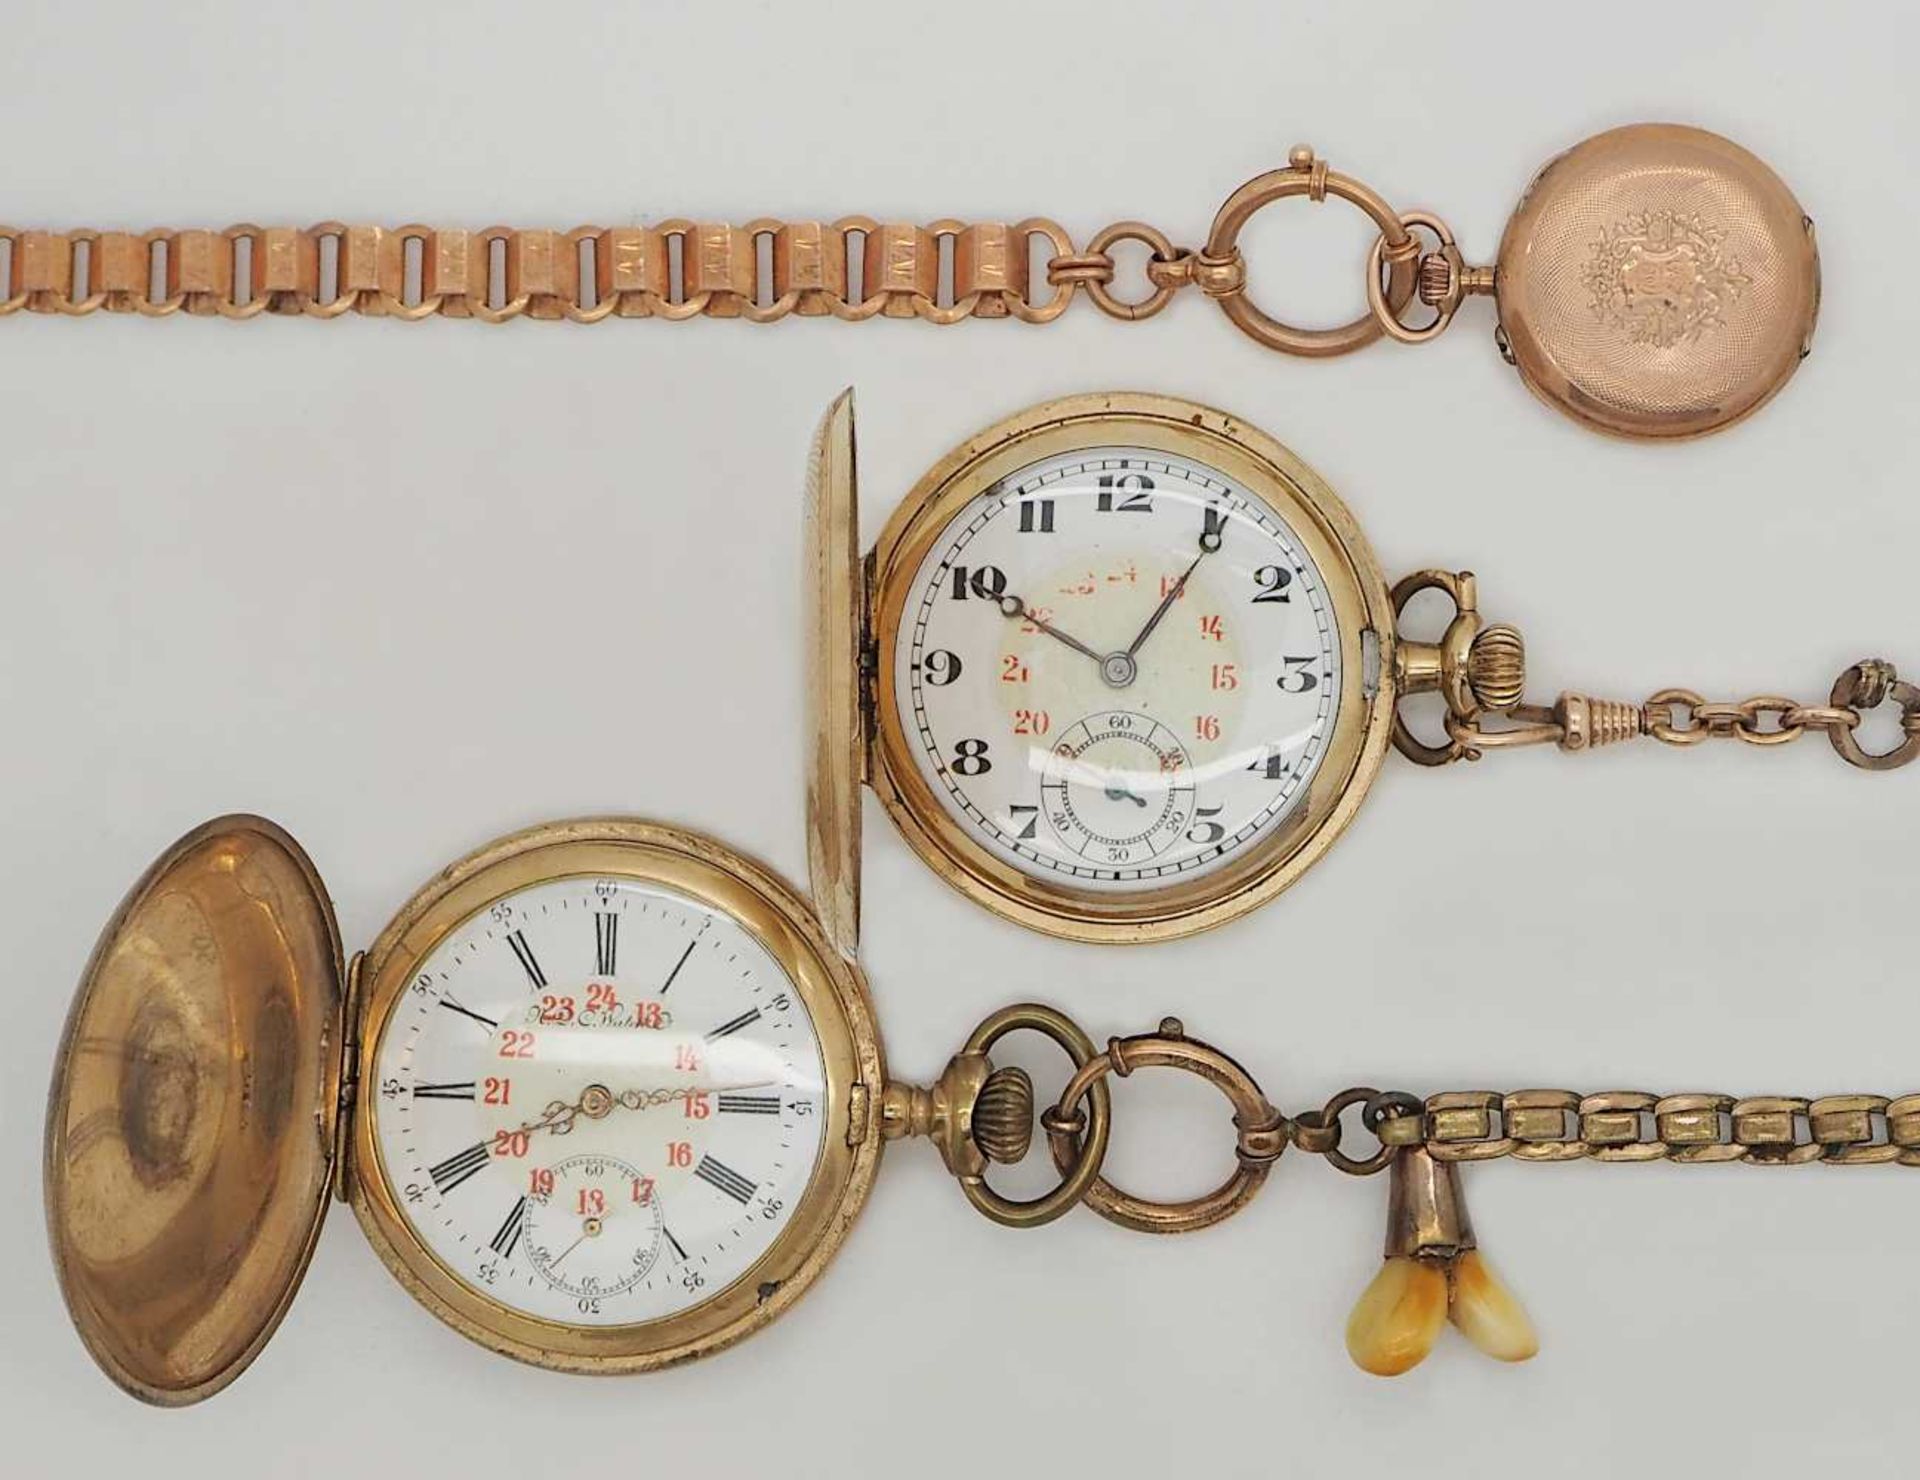 2 Herrentaschenuhren sowie 1 Damentaschenuhr je verg. je um 1900 sowie 2 Uhrenketten verg. 1 Uhr - Bild 2 aus 2